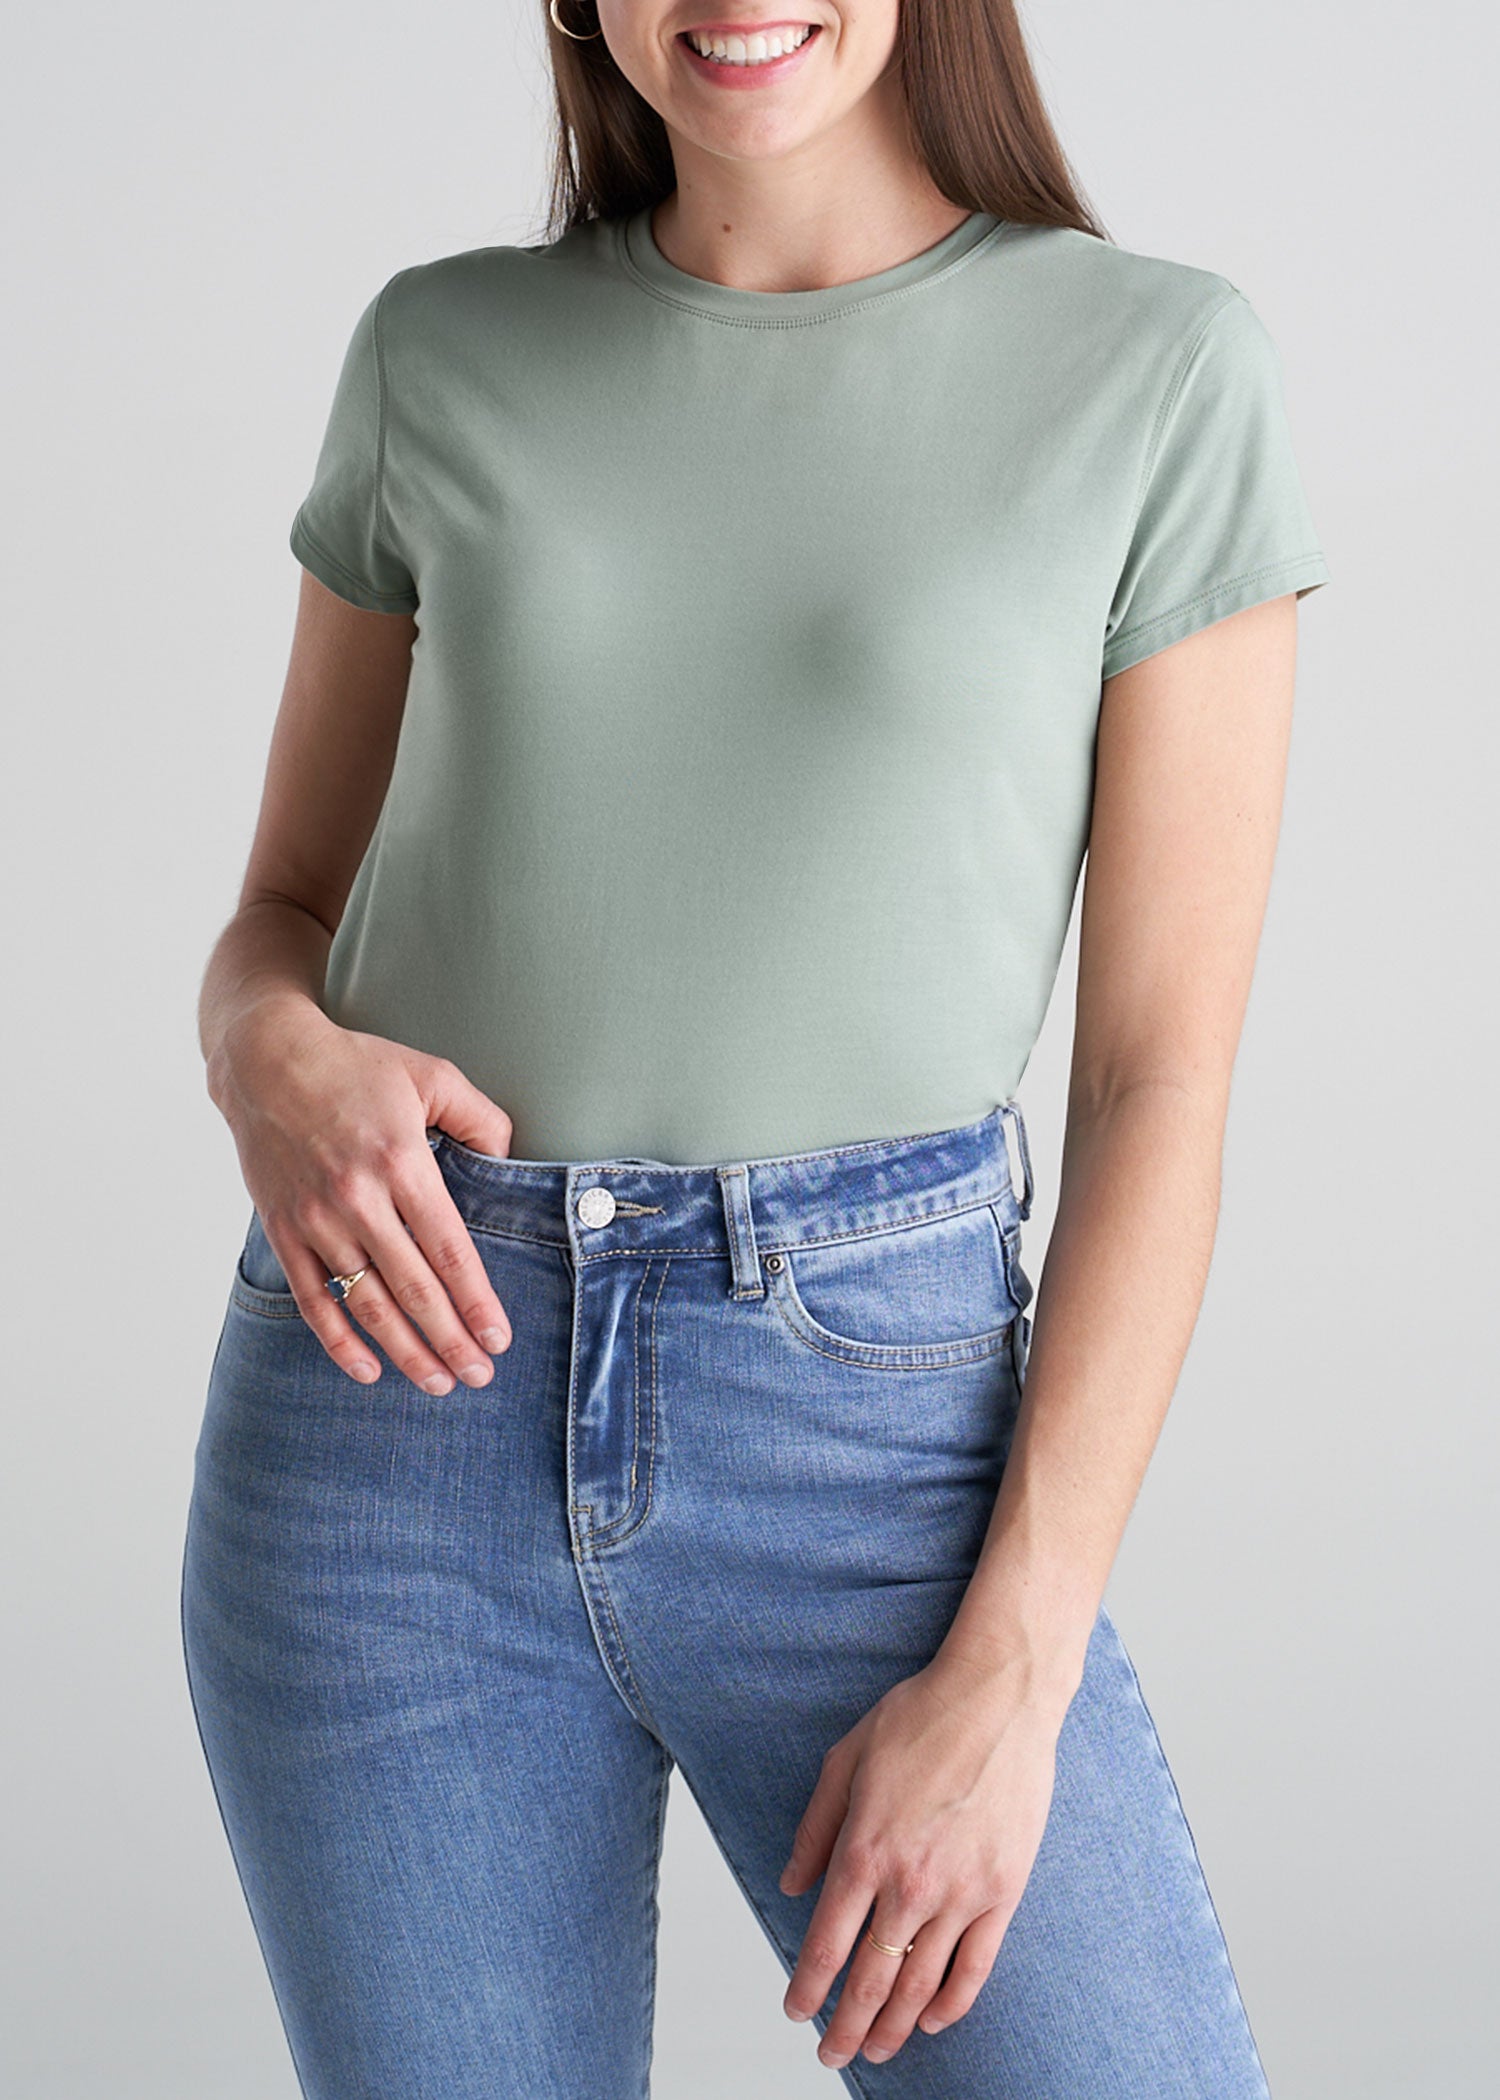 Women's Sage Green T-shirt: High Crew Neck Cap Sleeve